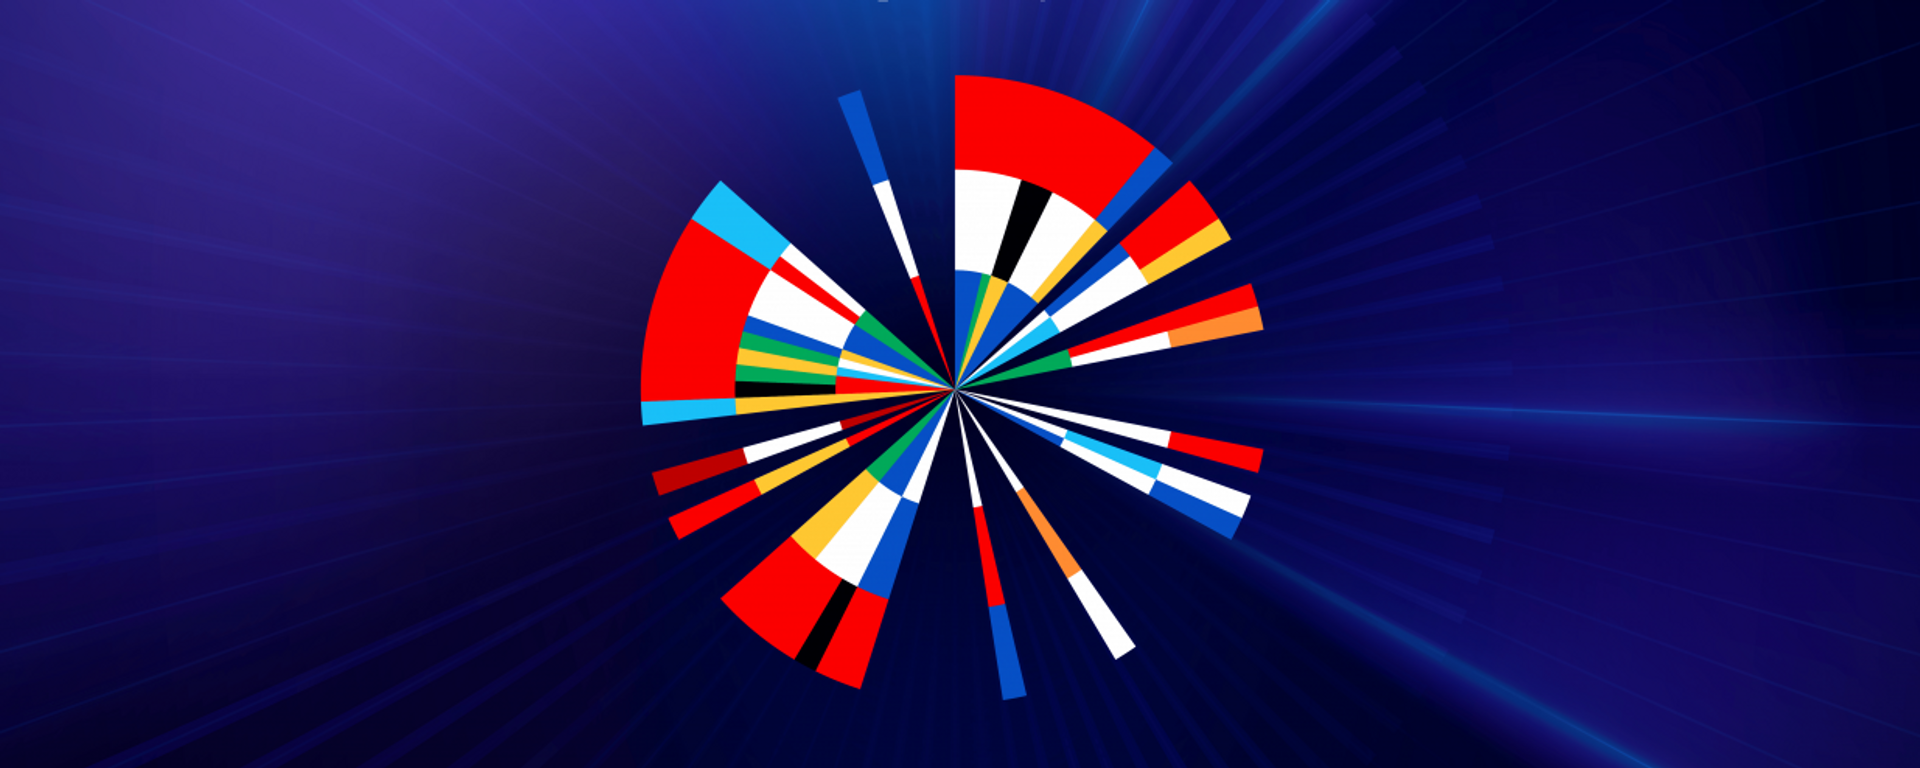 Новый логотип Евровидение 2020 - Sputnik Таджикистан, 1920, 02.04.2021